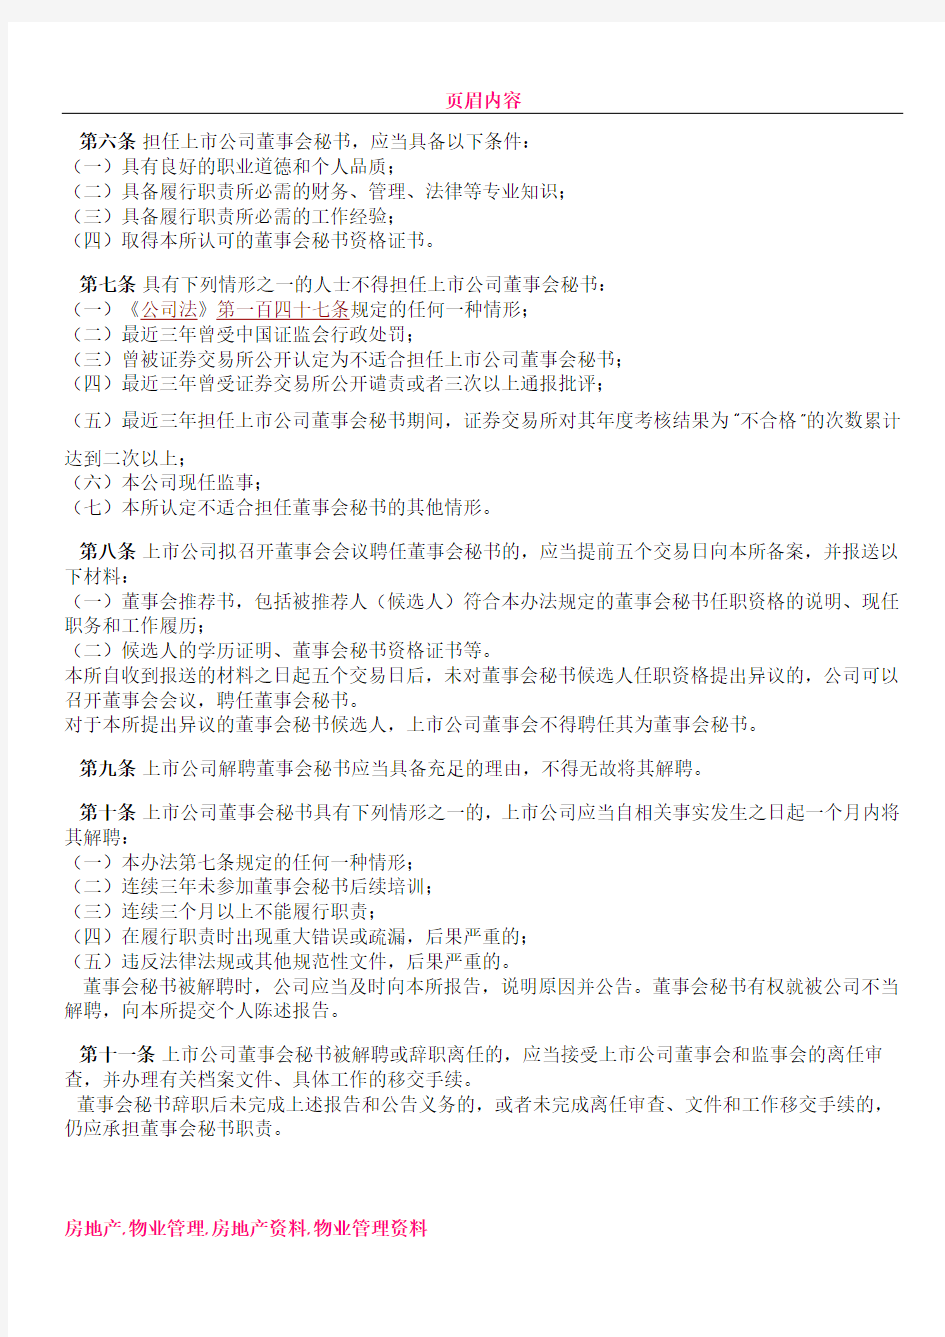 上海证券交易所上市公司董事会秘书管理办法(修订)